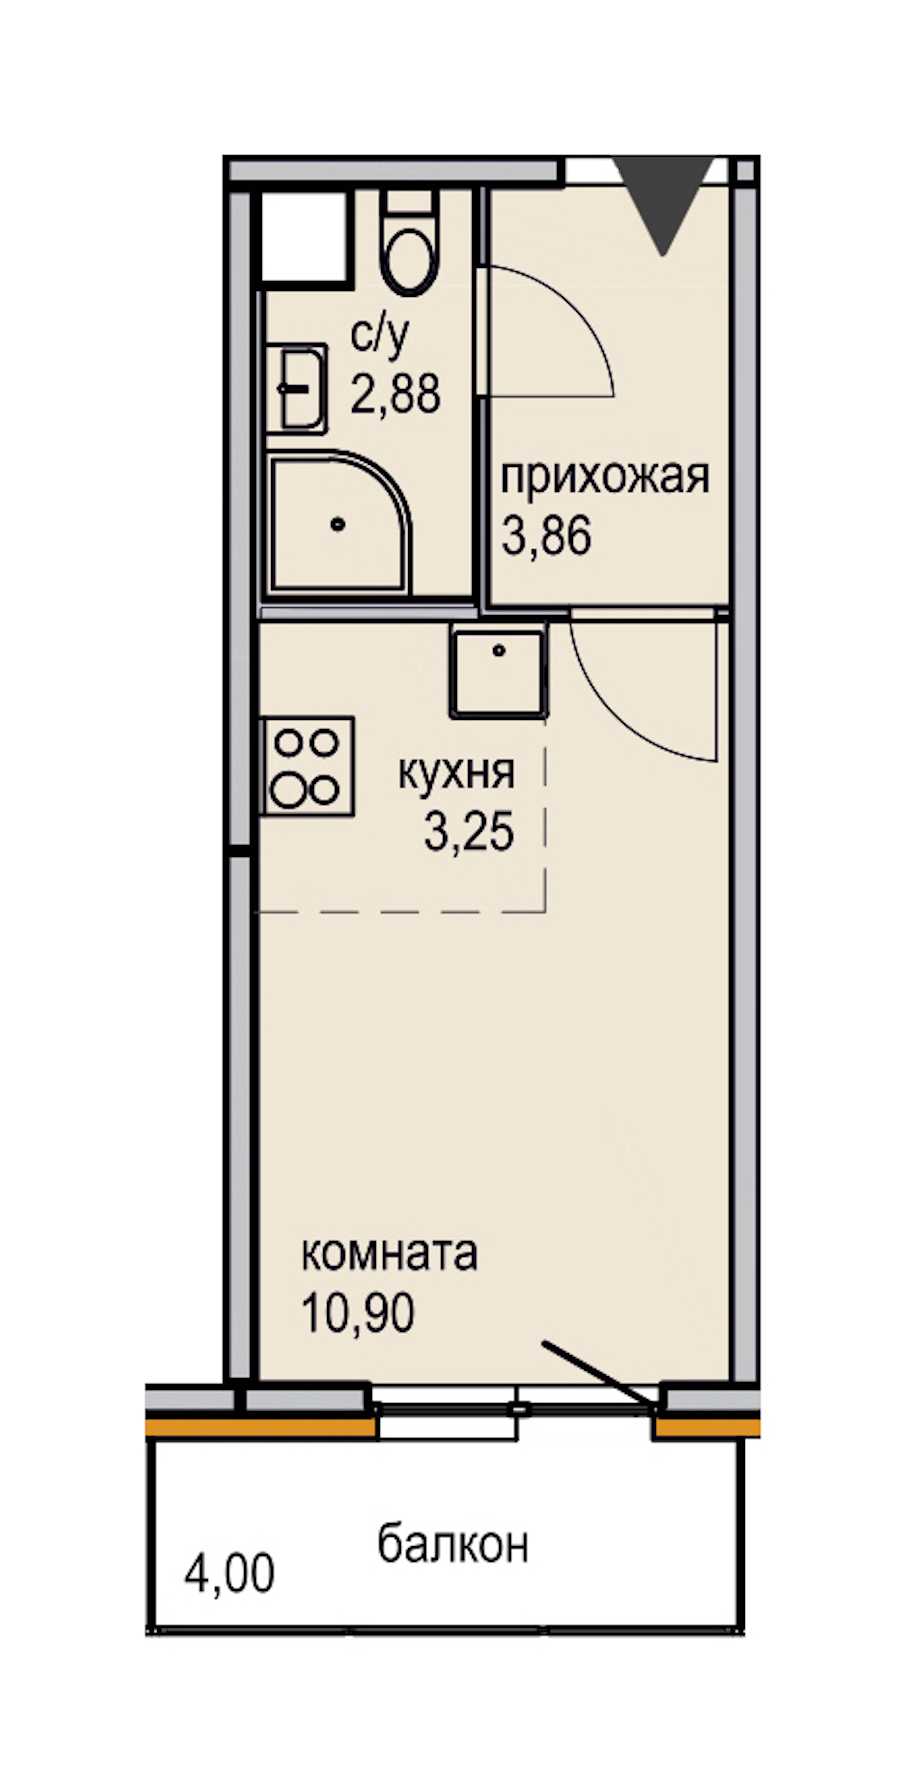 Студия в ЮИТ: площадь 20.89 м2 , этаж: 14 – купить в Санкт-Петербурге